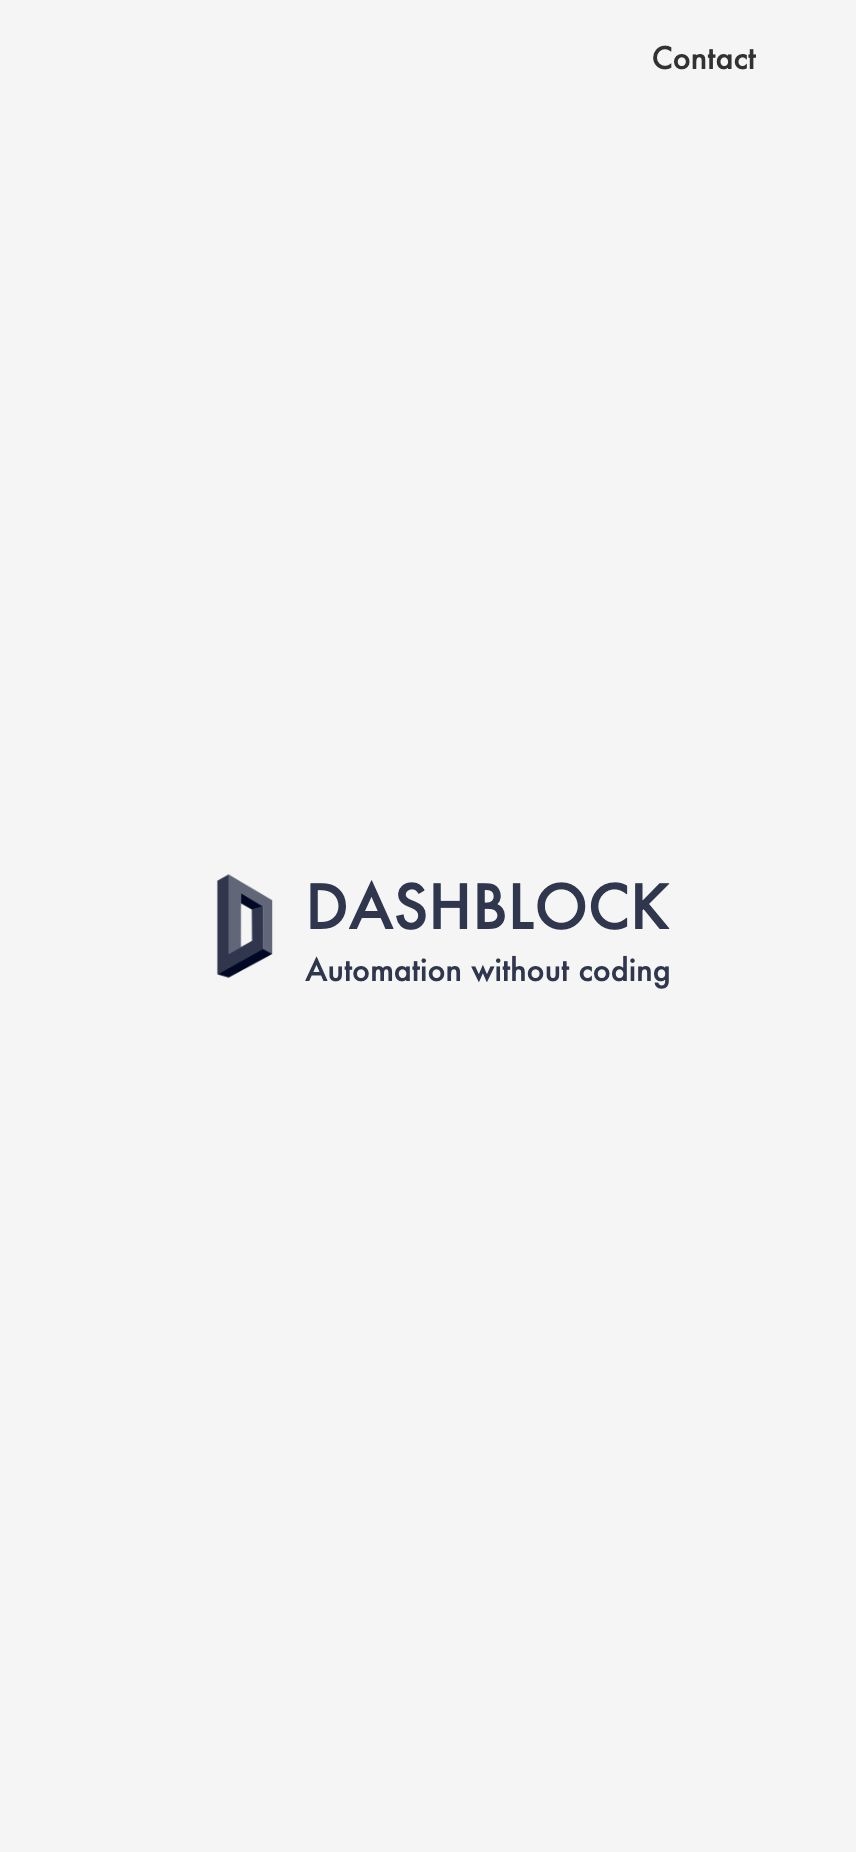 Dashblock landing page design